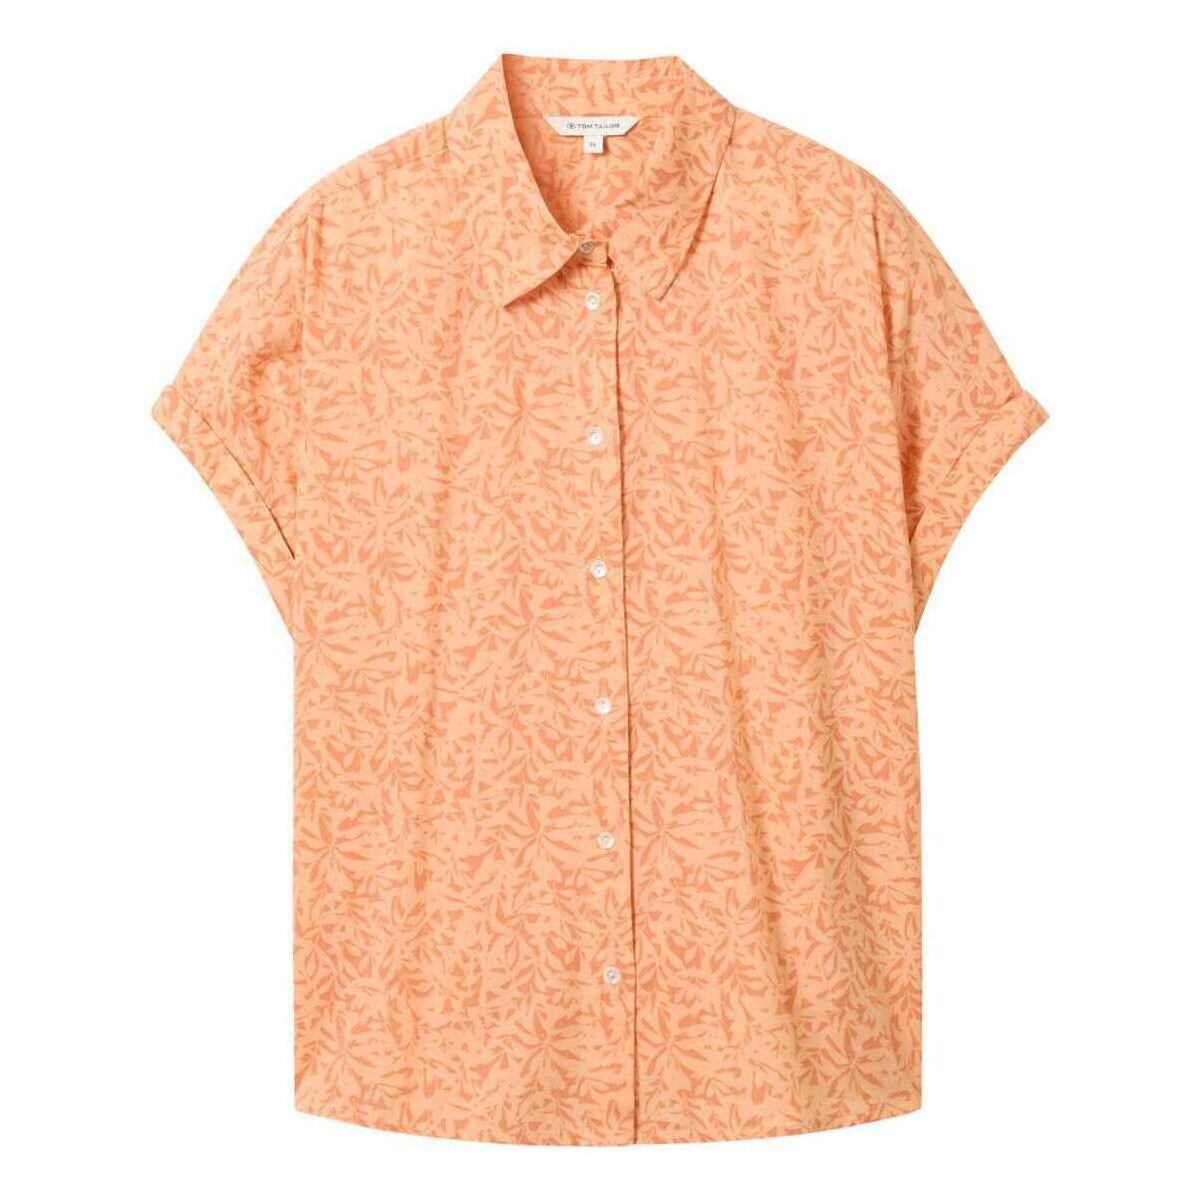 Vêtements Femme Chemises / Chemisiers Tom Tailor 162817VTPE24 Orange